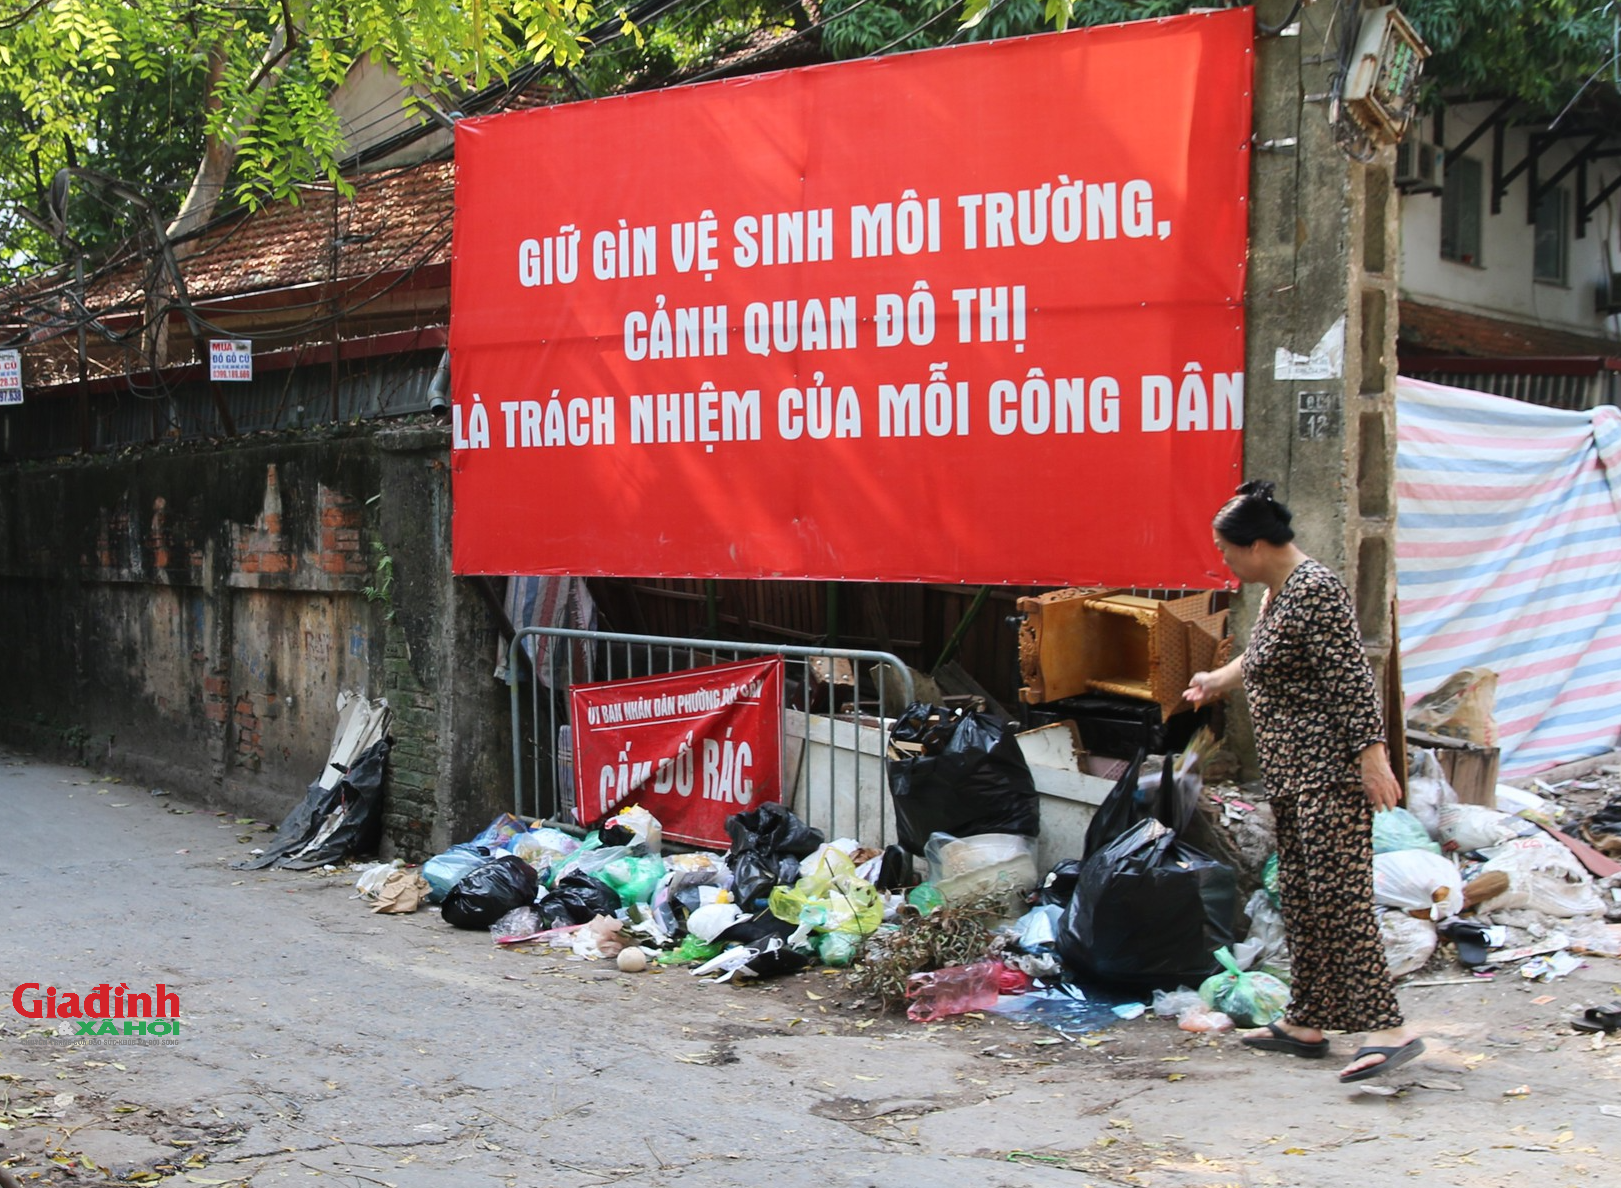 Hà Nội: Dự án 15 năm vẫn nằm trên giấy, người dân 'đã quen' sống chung với rác thải, ô nhiễm  - Ảnh 5.